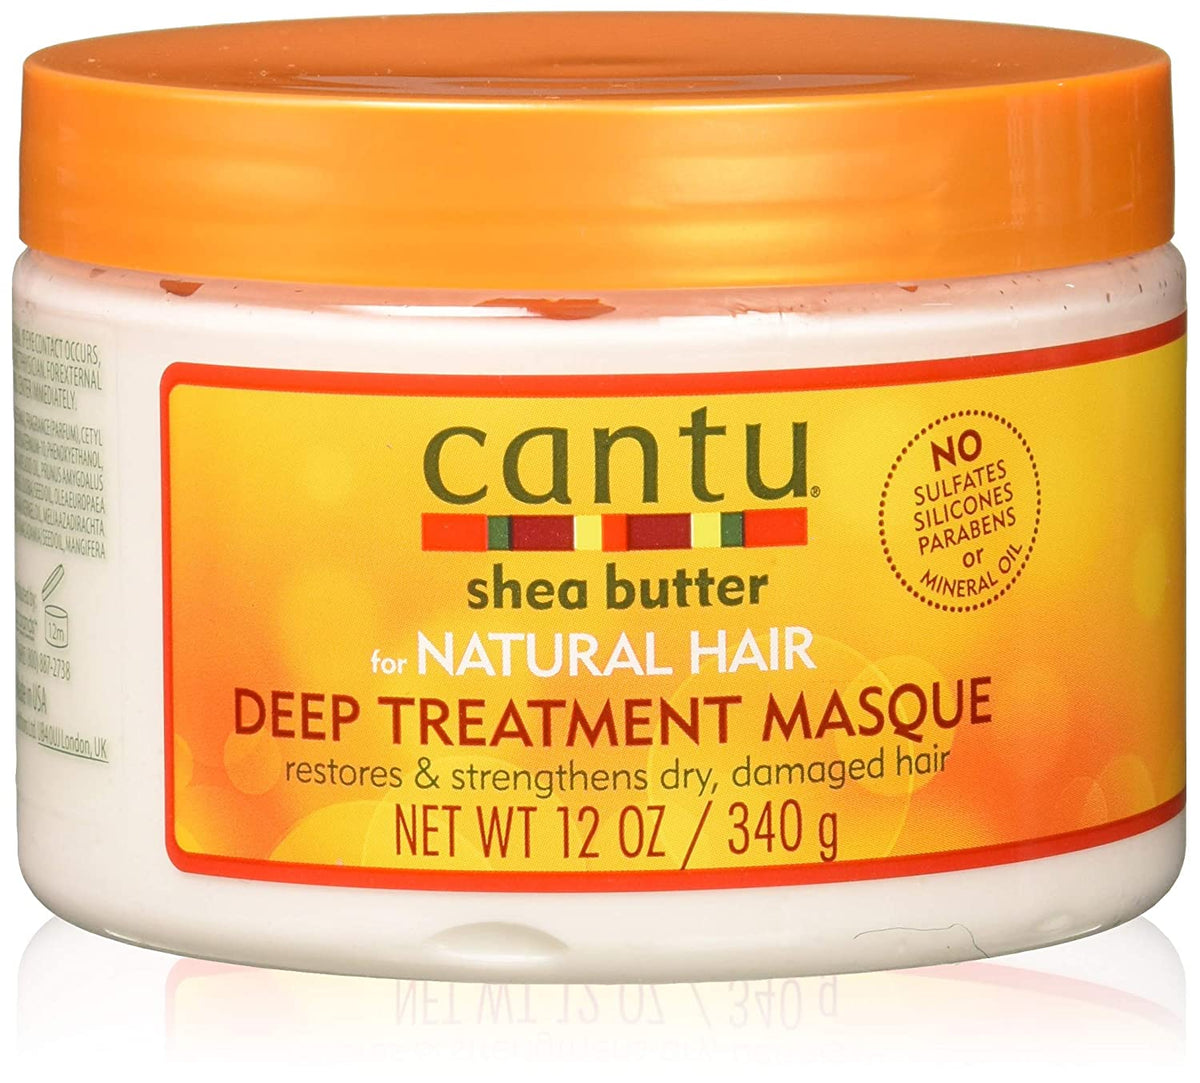 CANTU S/B DEEP TREATMENT MASQUE CANTU NATURAL HAIR 12OZ